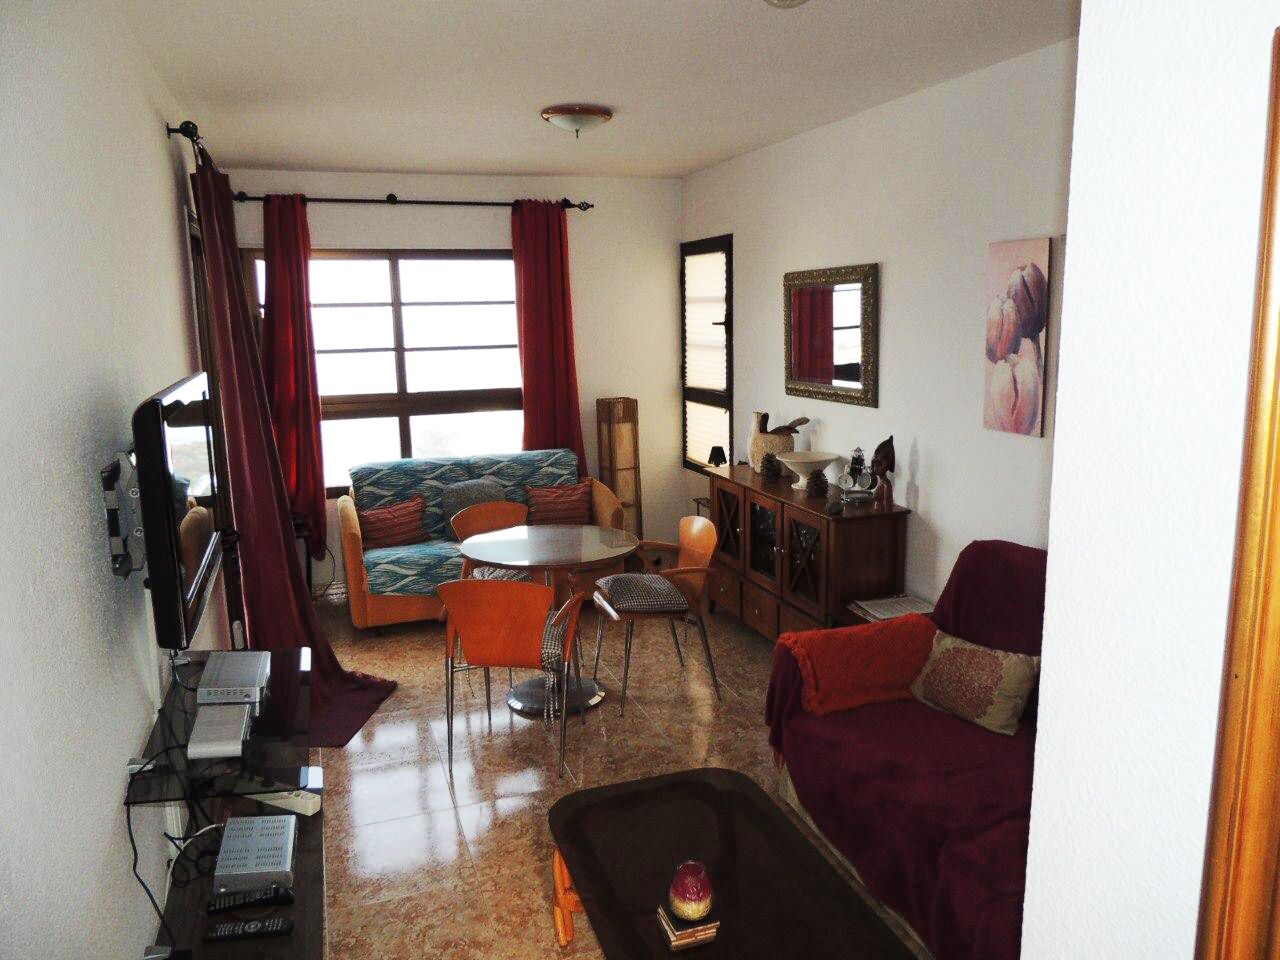 Apartment in Santa Cruz de Tenerife, Spain, 45 sq.m - picture 1